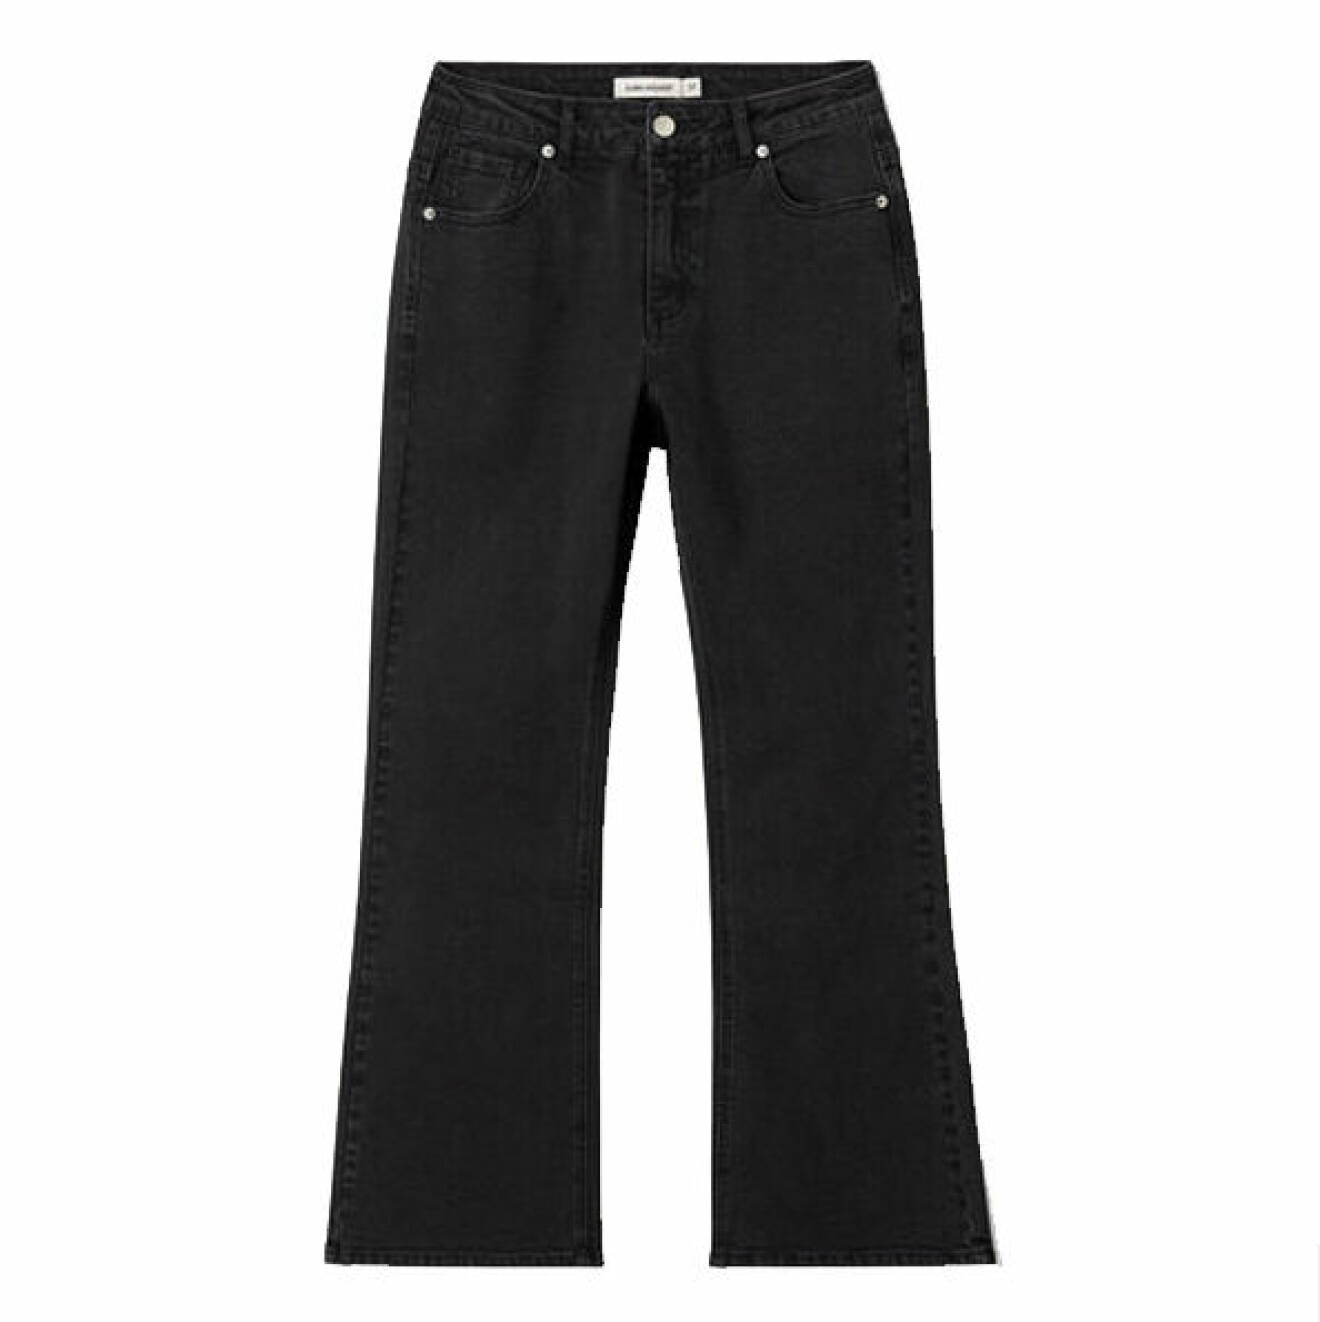 utsvängda jeans inspirerat av 70-talets mode vintern 2021